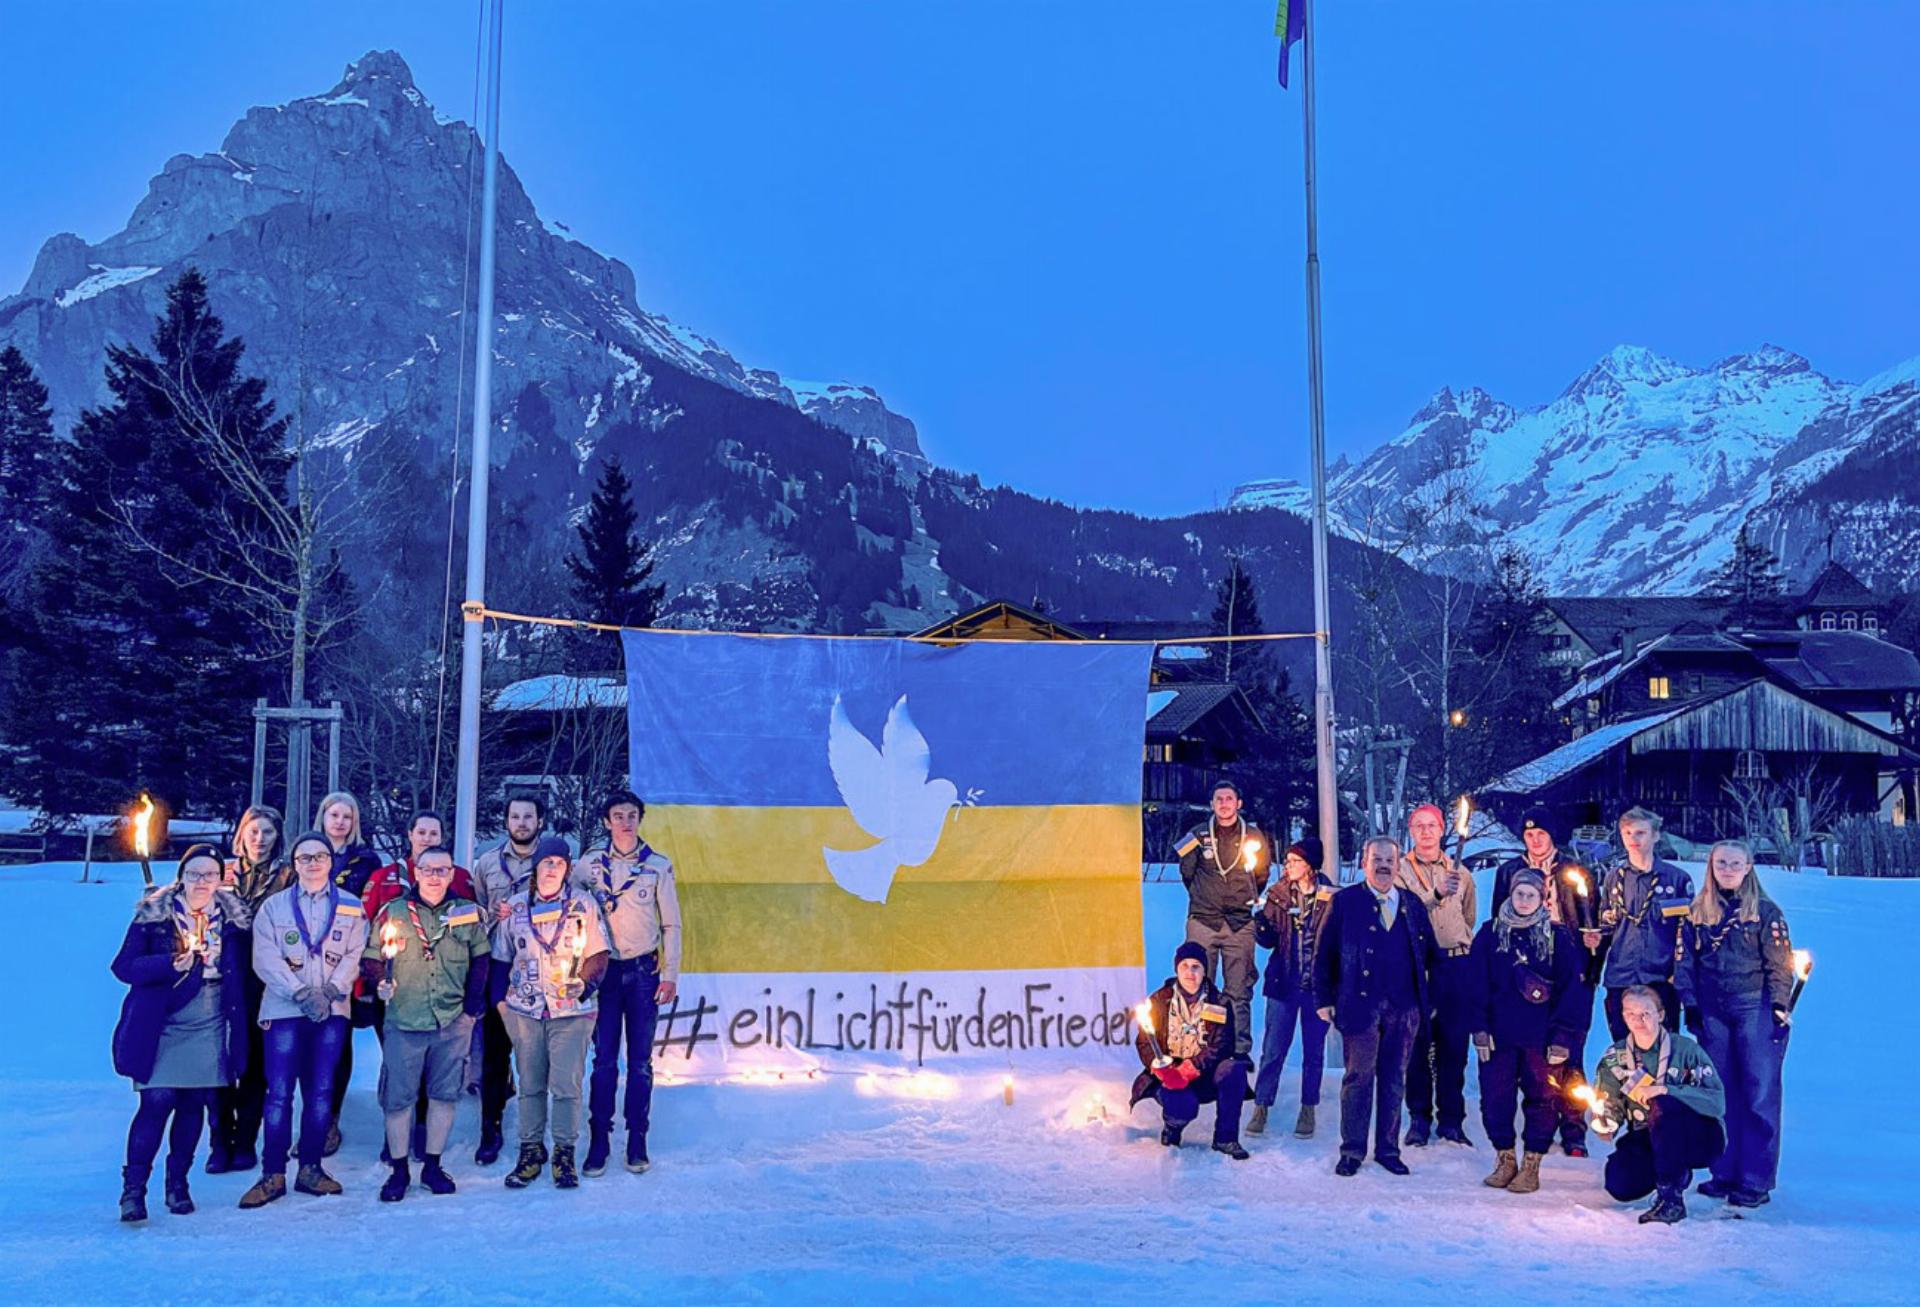 1: Anfang März 2022 fand in Kandersteg eine Solidaritätskundgebung statt. Pfadis hielten vor Ort eine Friedensfahne hoch (Bild: zvg).